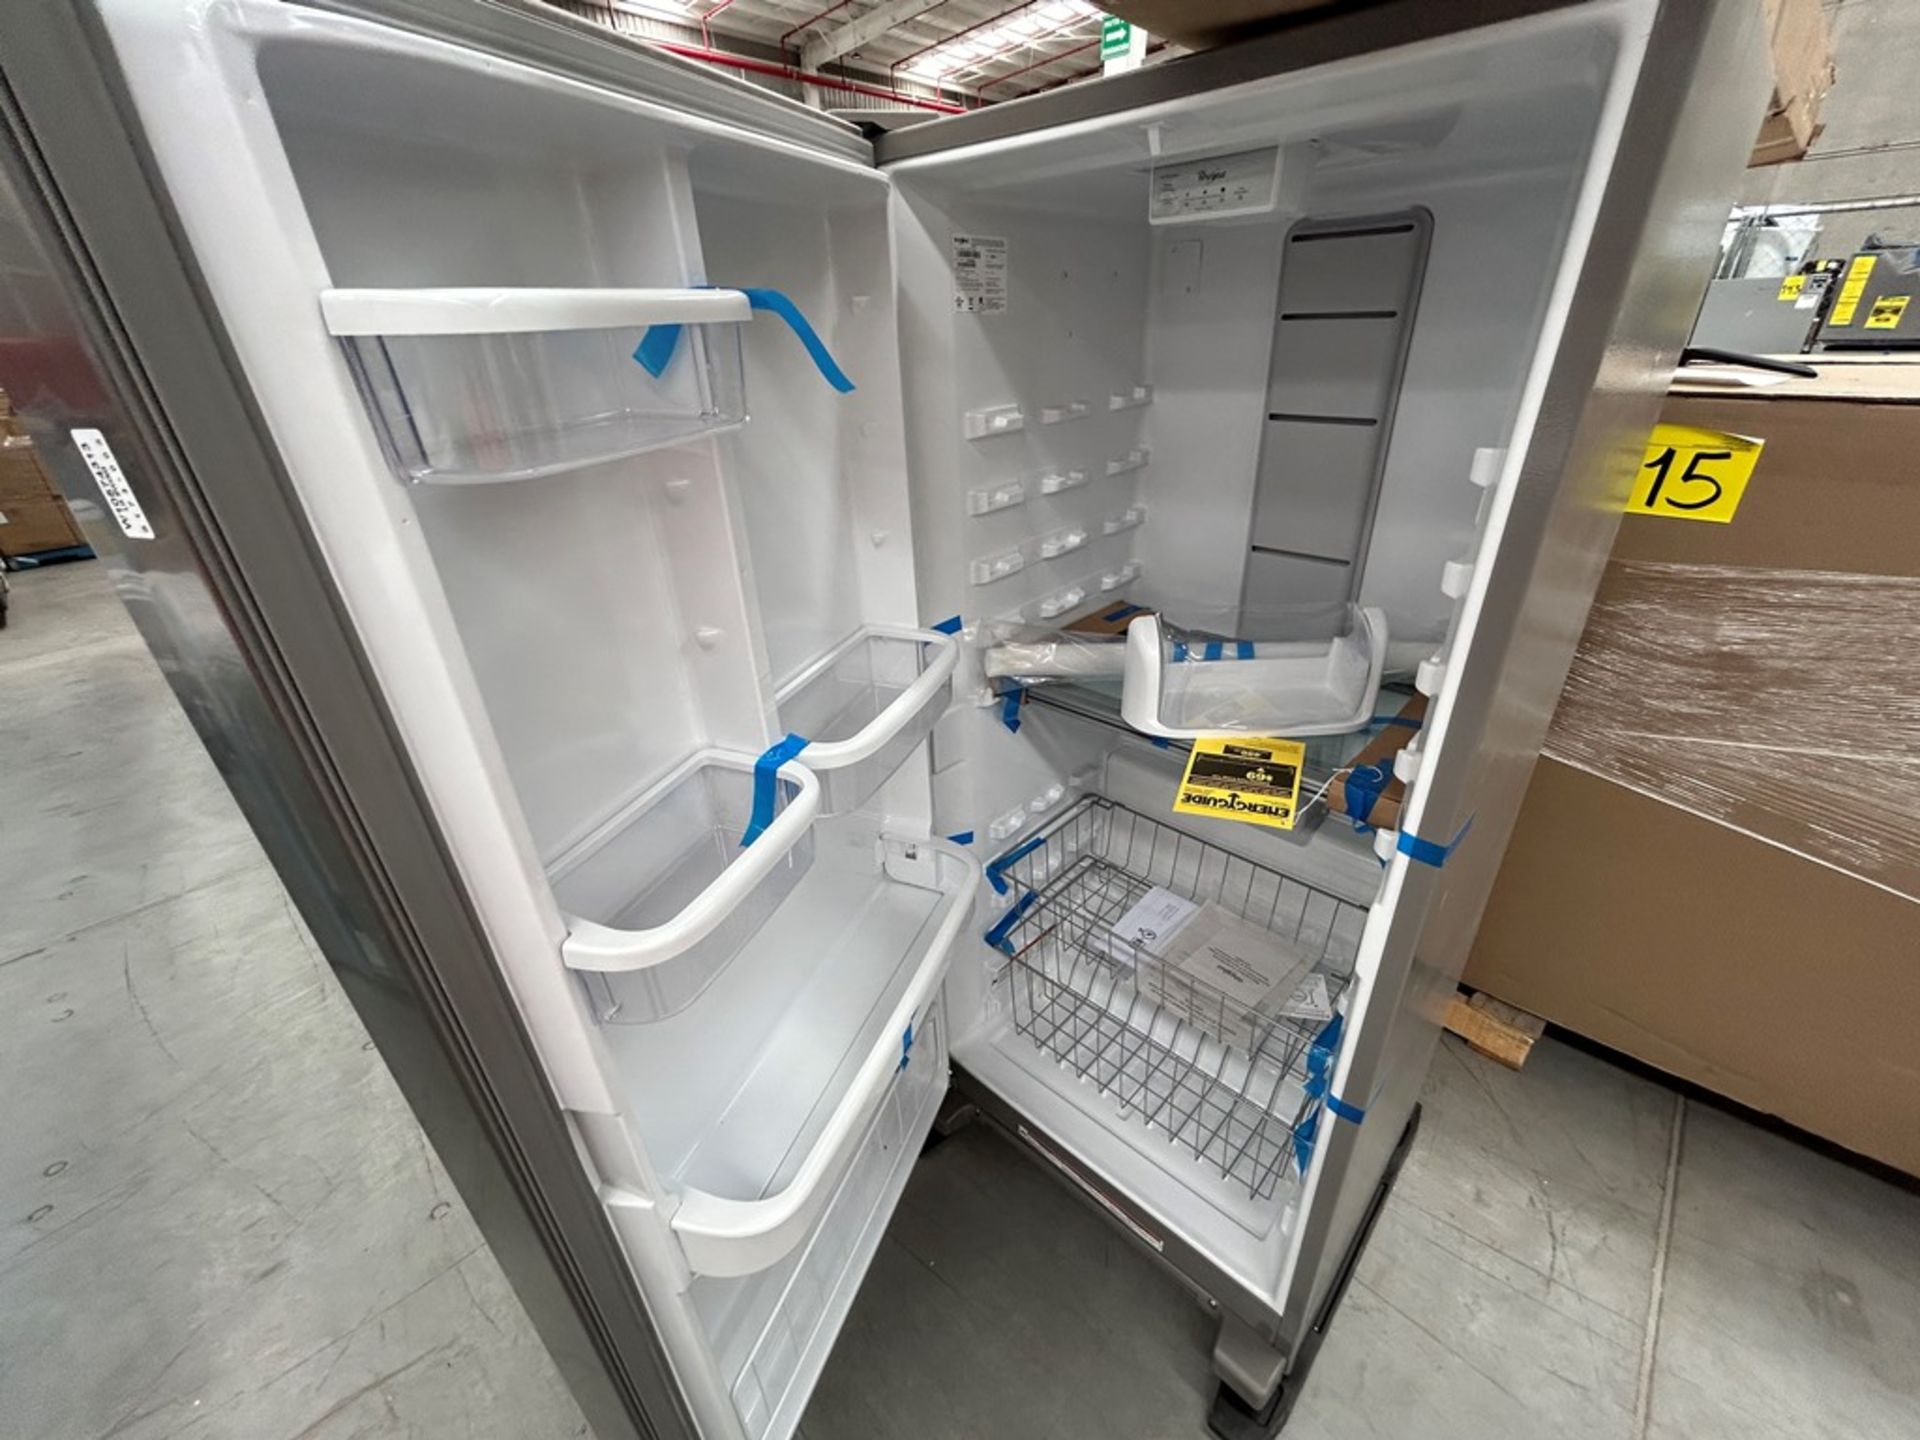 1 refrigerador Marca WHIRPOOL, Modelo WSZ57L18DM07, Serie 05283, Color GRIS (No se asegura su func - Image 4 of 5